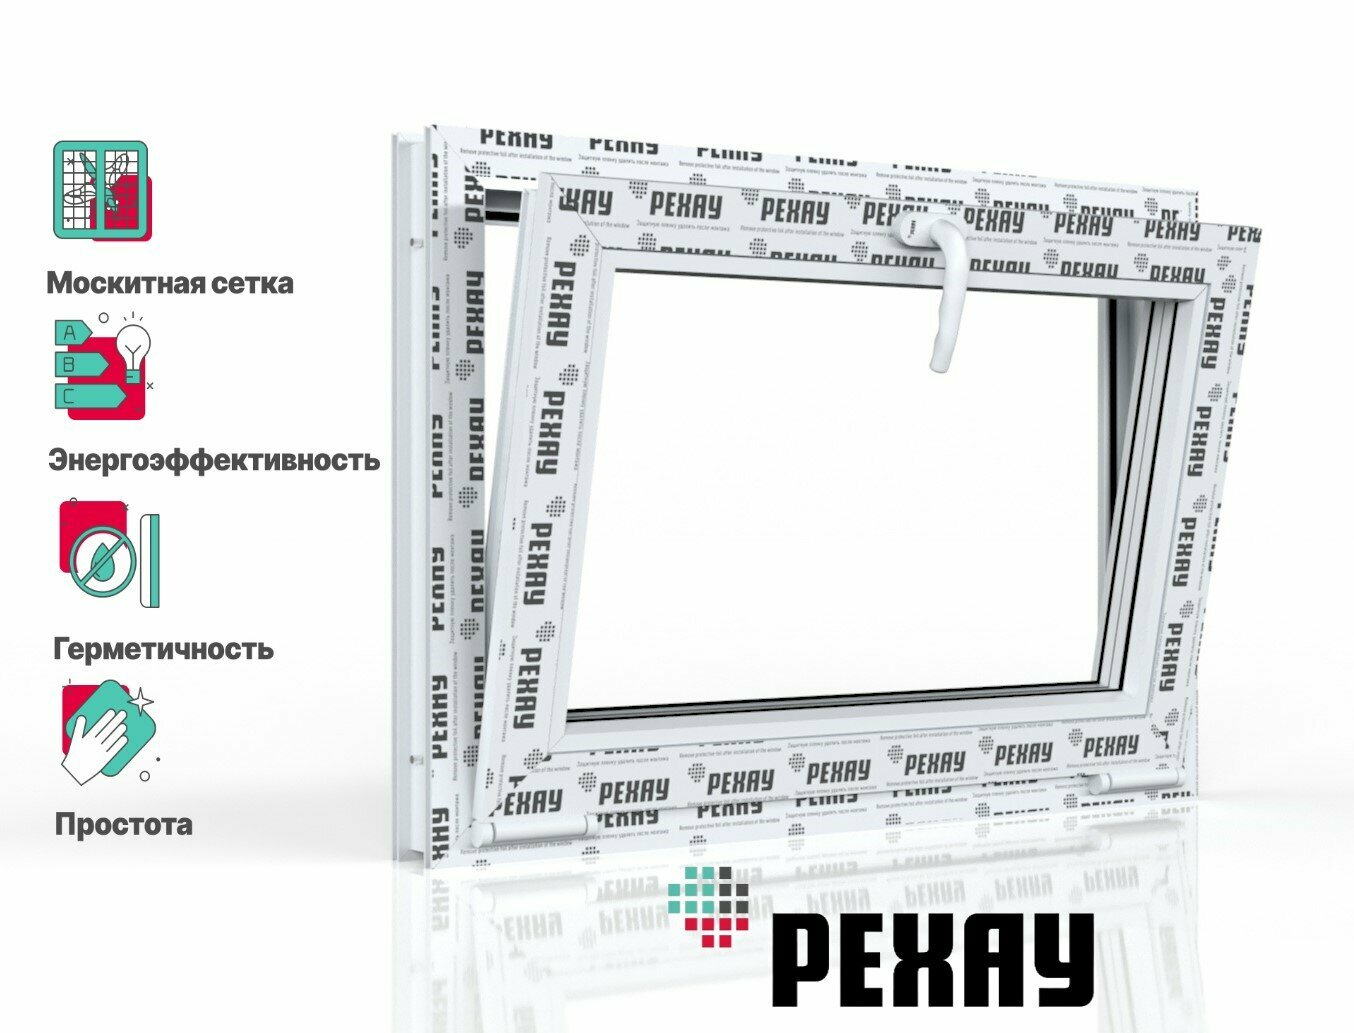 Пластиковое окно ПВХ + москитная сетка рехау GRAZIO профиль 70 мм 550x800 мм (ВхШ) с учетом подставочного профиля фрамуга энергосберегаюший двухкамерный стеклопакет белое